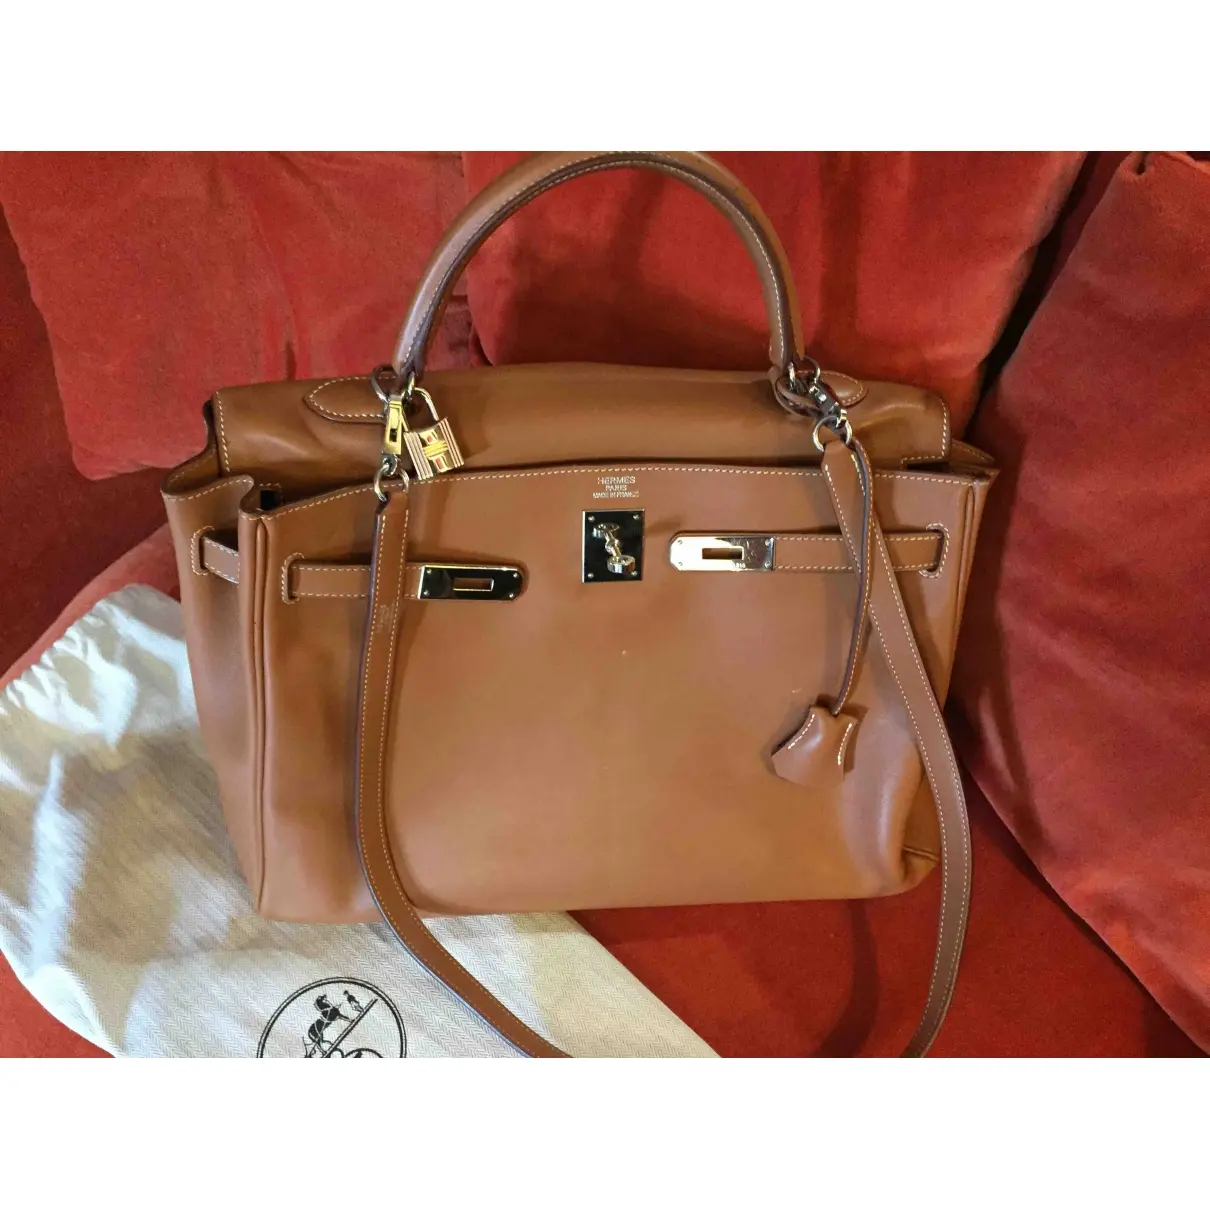 Hermès Kelly 35 leather handbag for sale